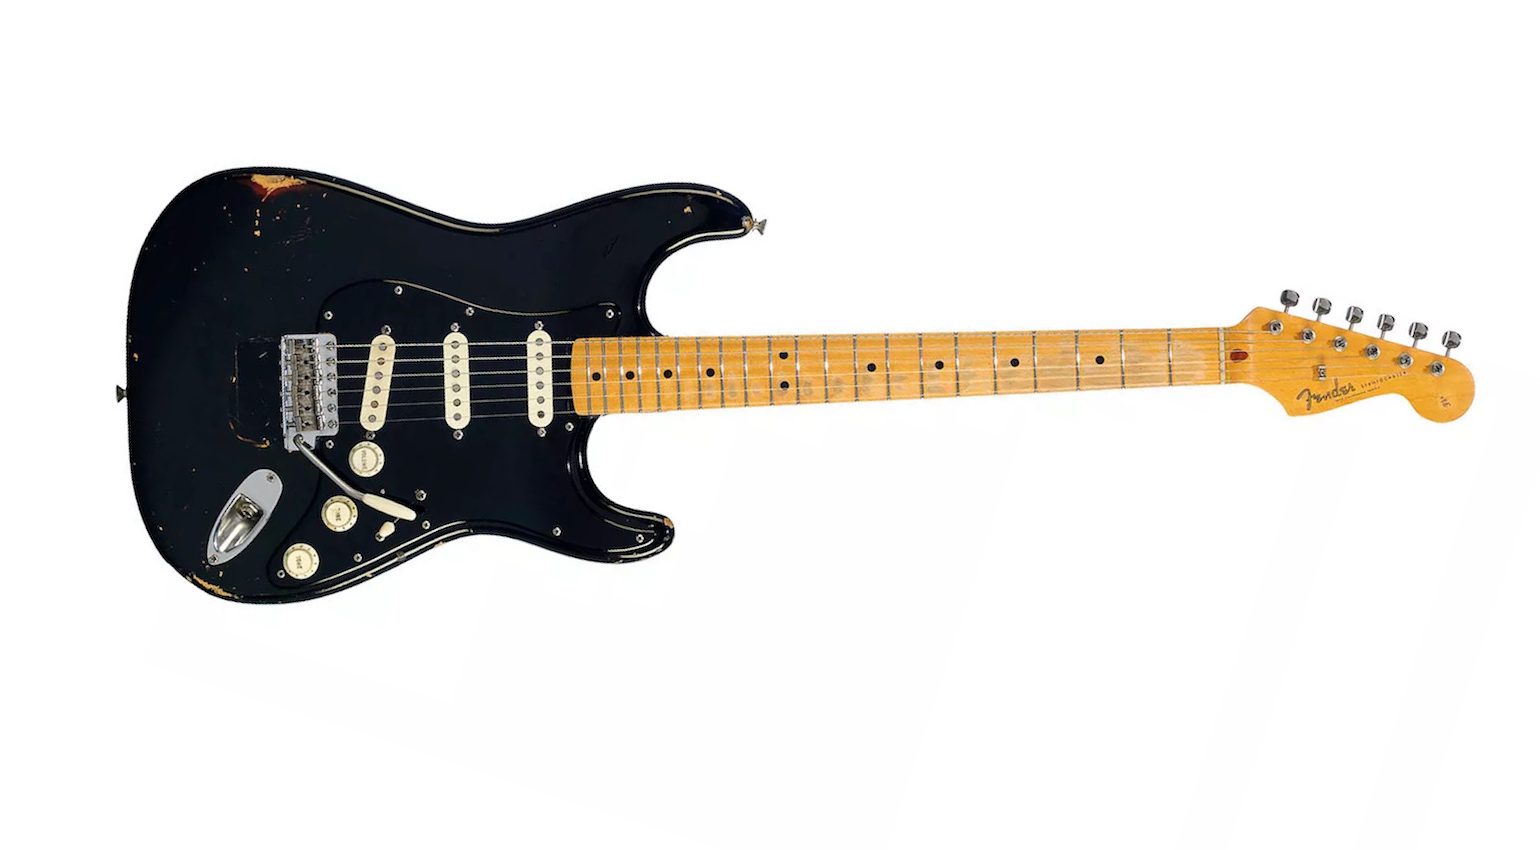 Gilmour's Black Fender Stratocaster